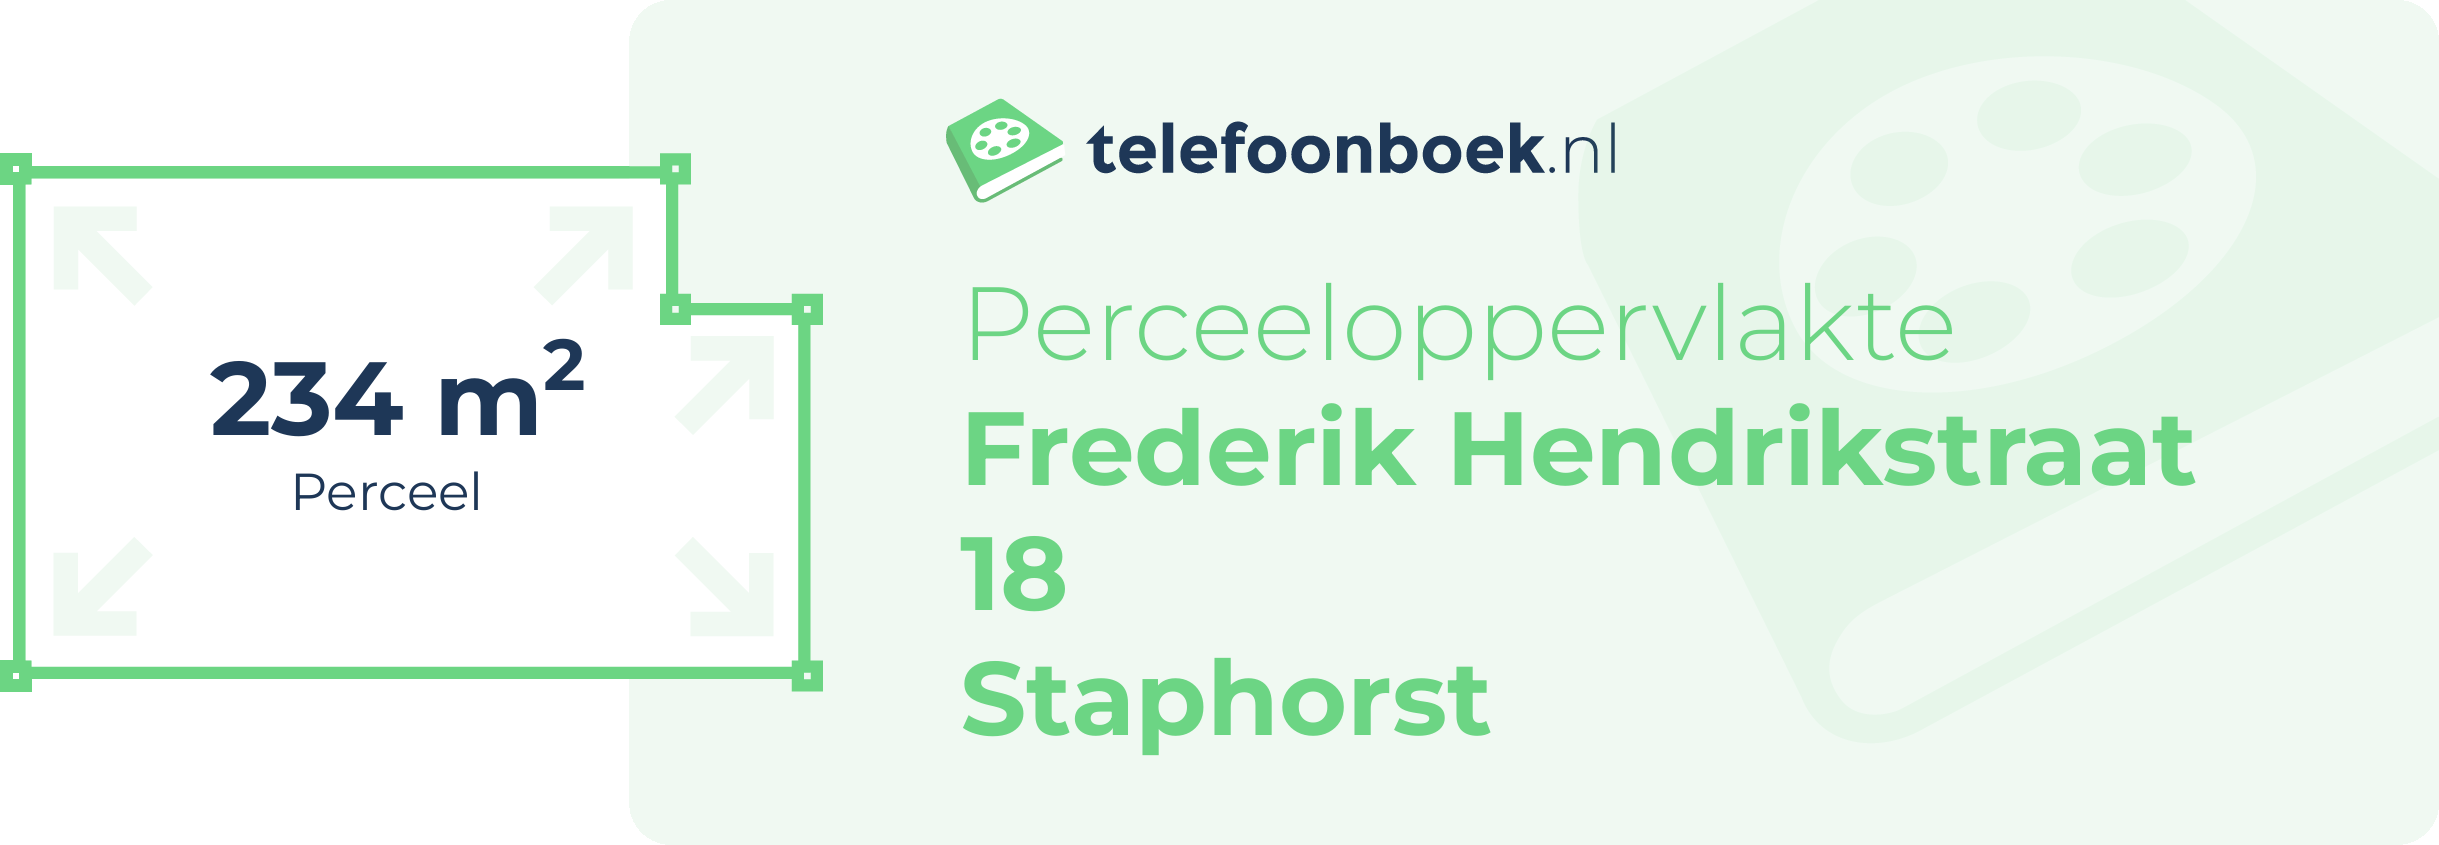 Perceeloppervlakte Frederik Hendrikstraat 18 Staphorst